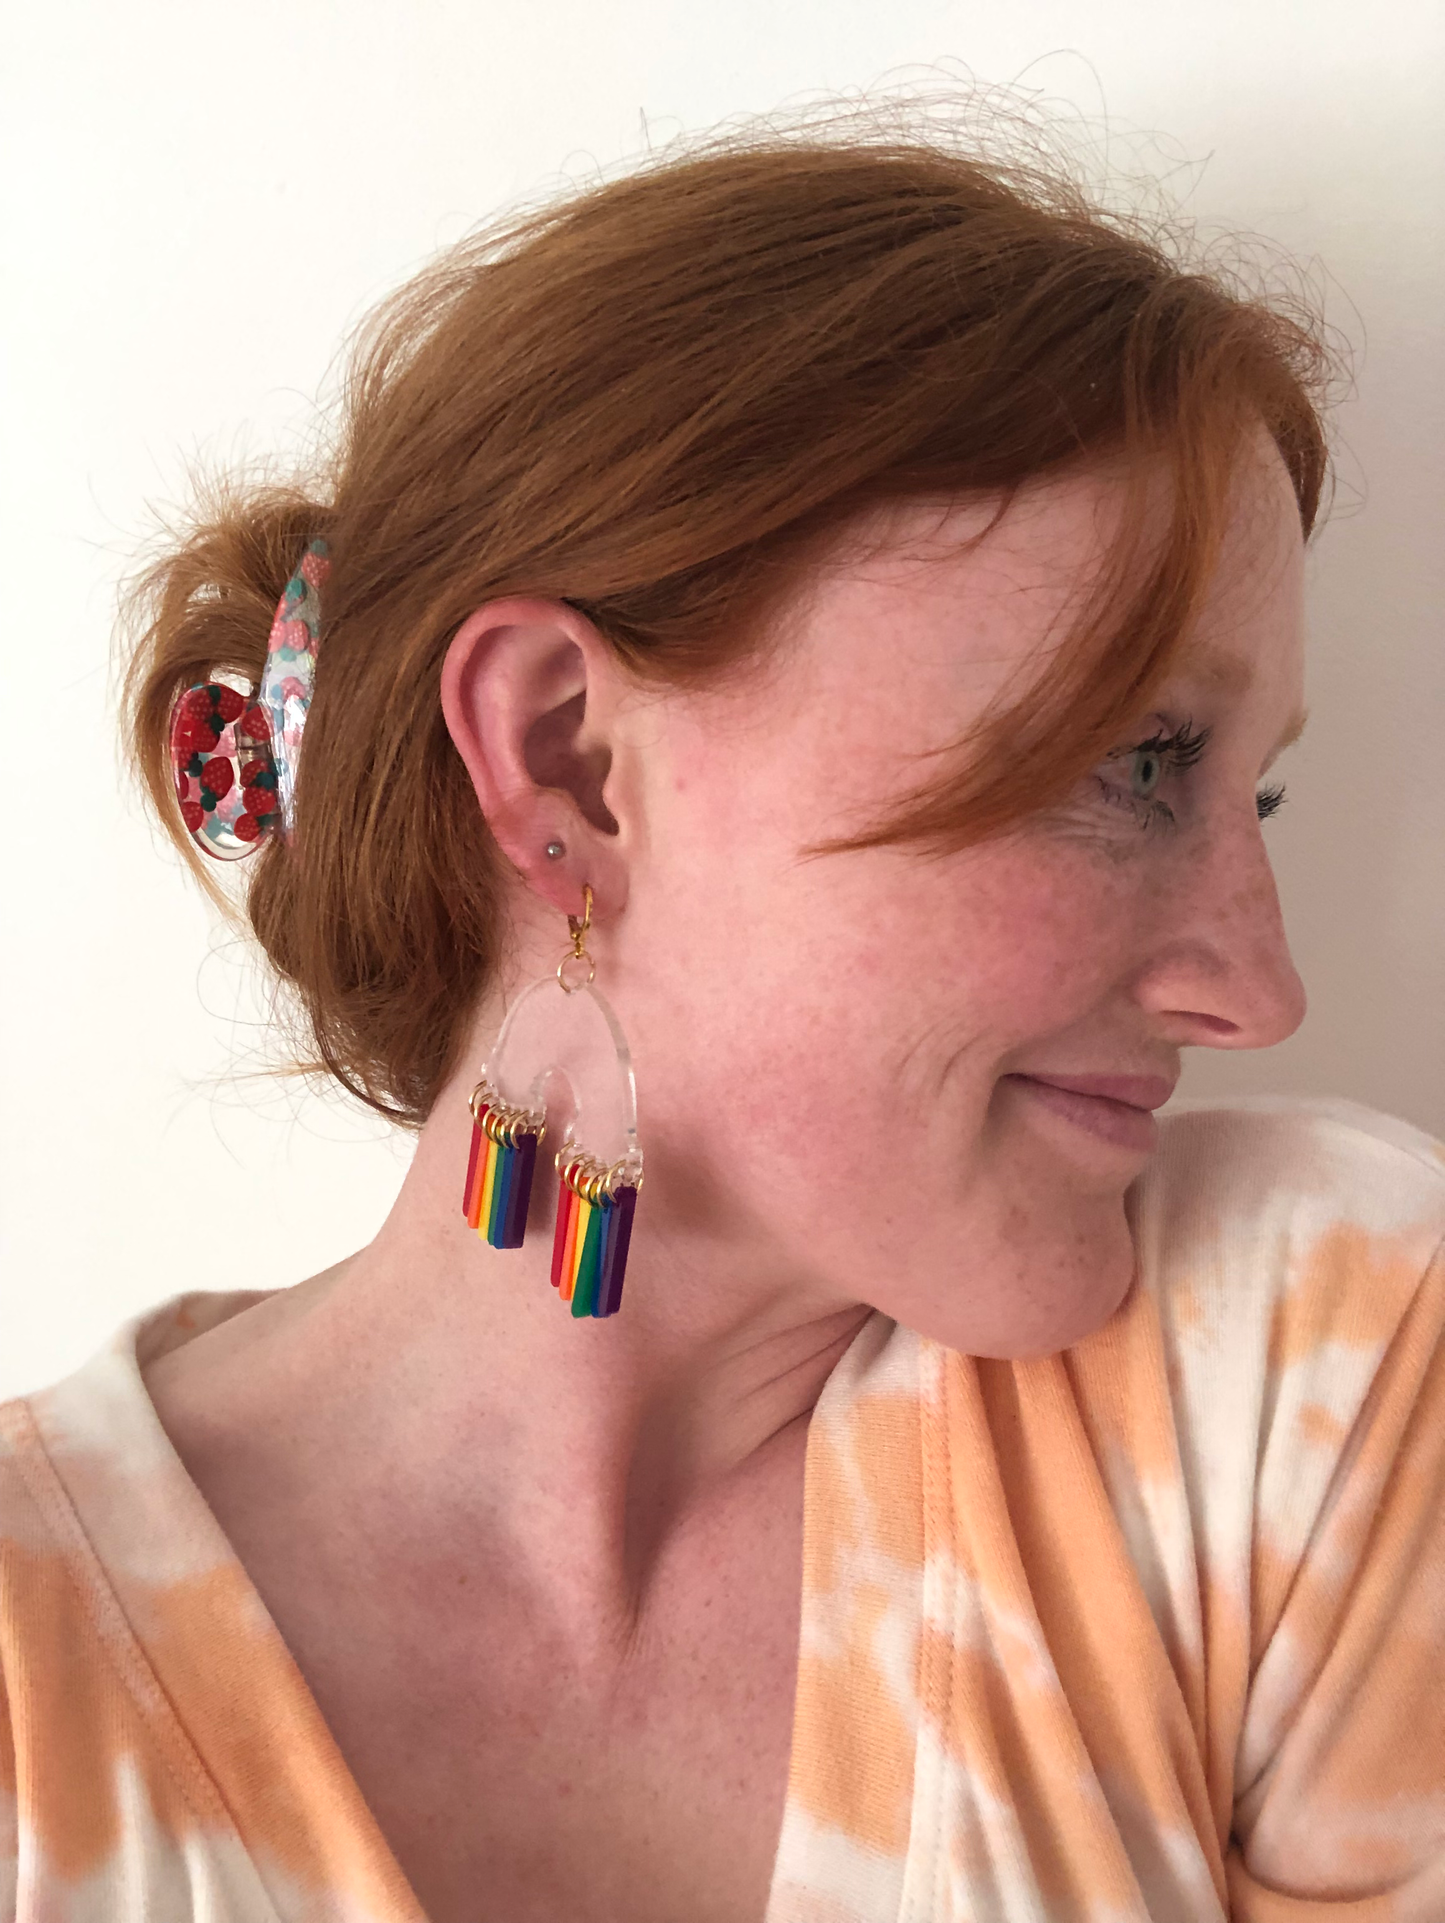 Rainbow Cloud Pride Earrings